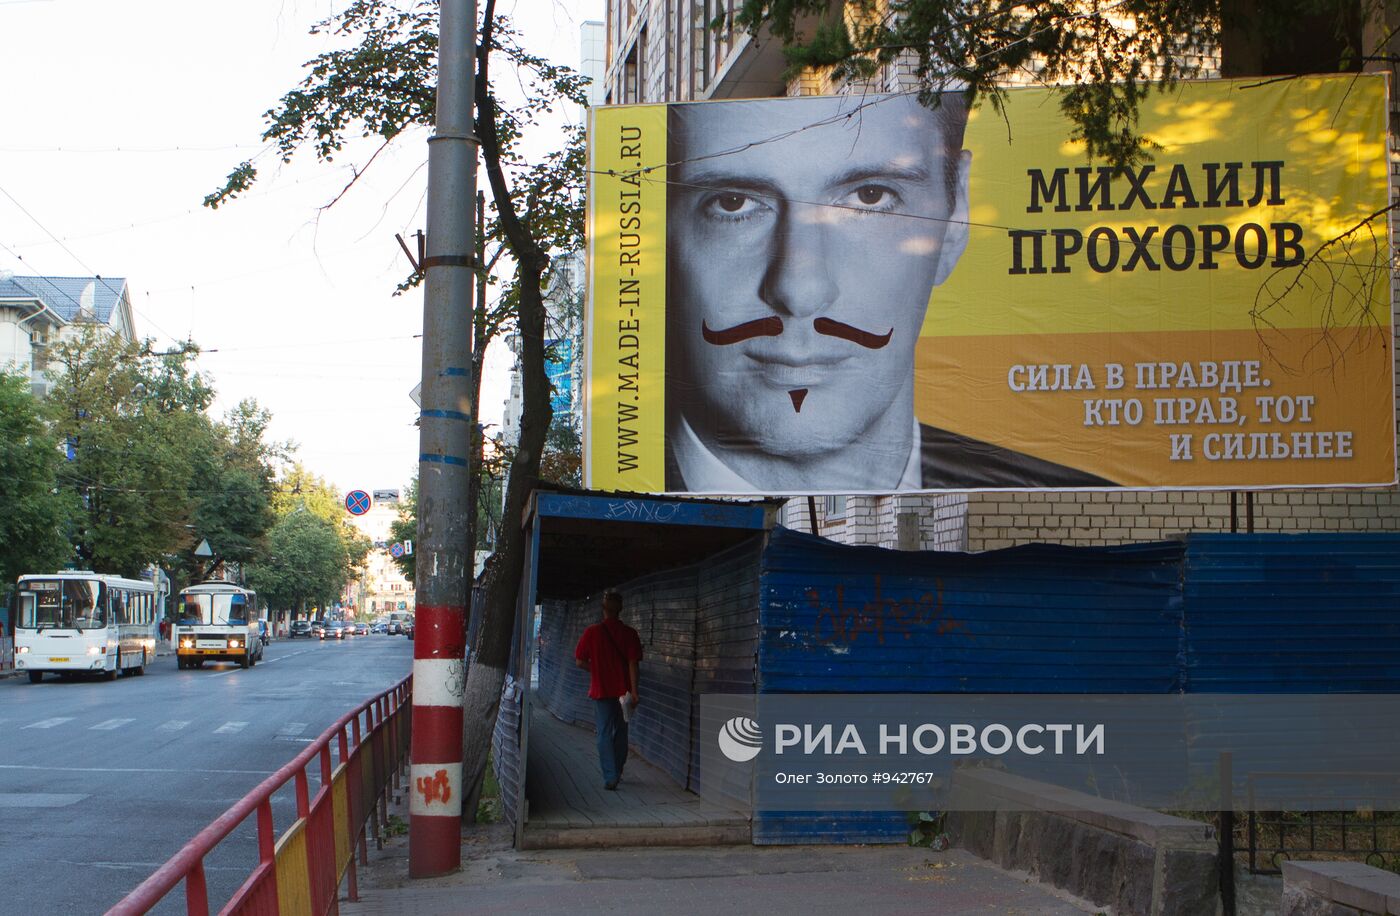 Рекламный билборд Михаила Прохорова испорчен в Нижнем Новгороде